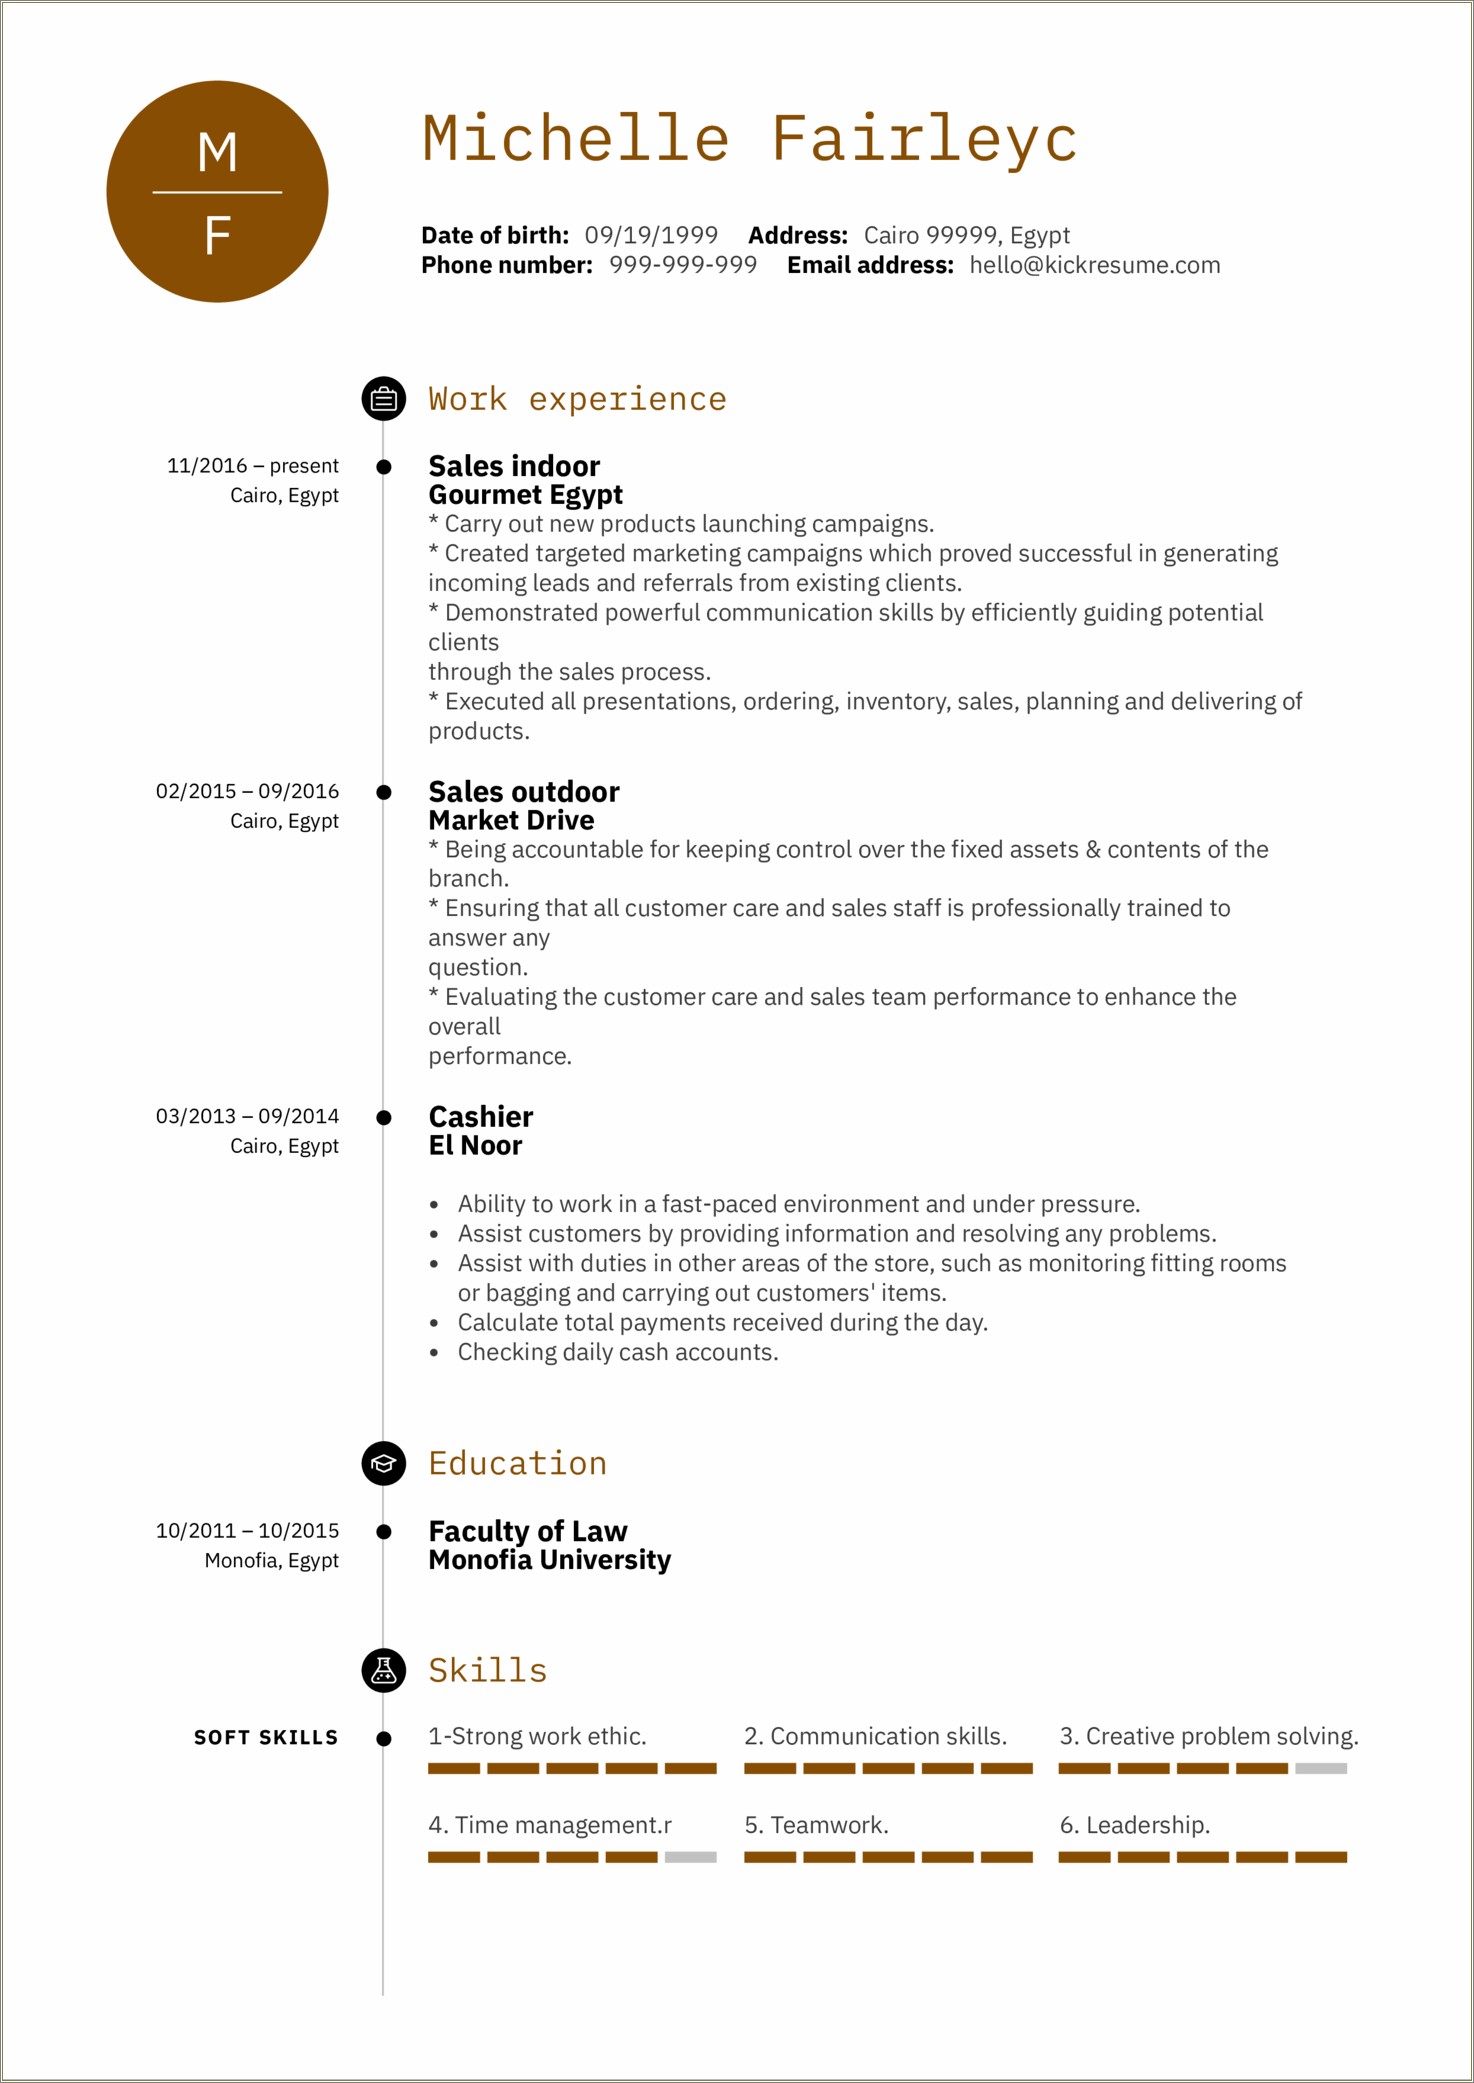 Metropcs Sales Associate Job Description Resume